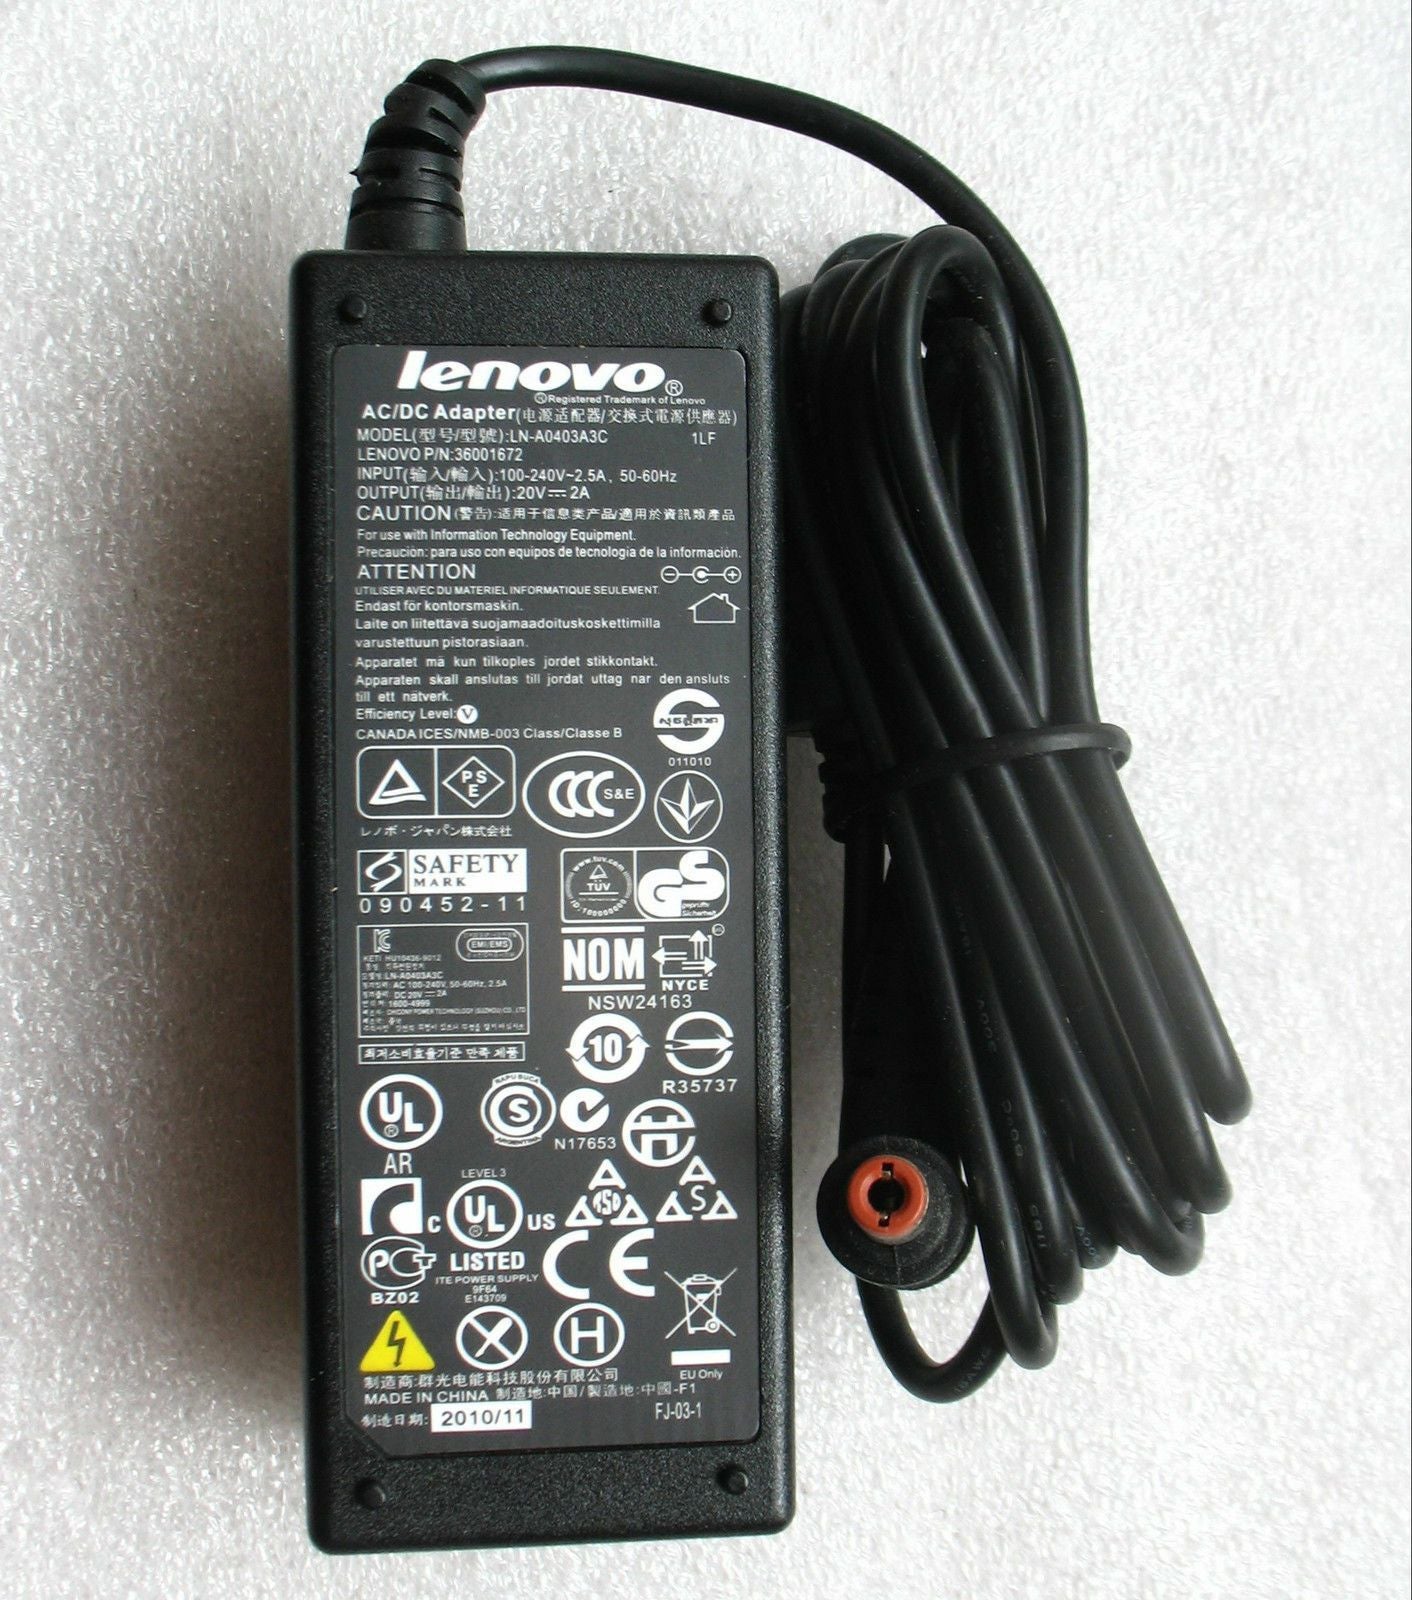 Genuine Lenovo 40W AC Adapter for IdeaPad U310 4375-22U,LN-A0403A3C,ADP-40NH B